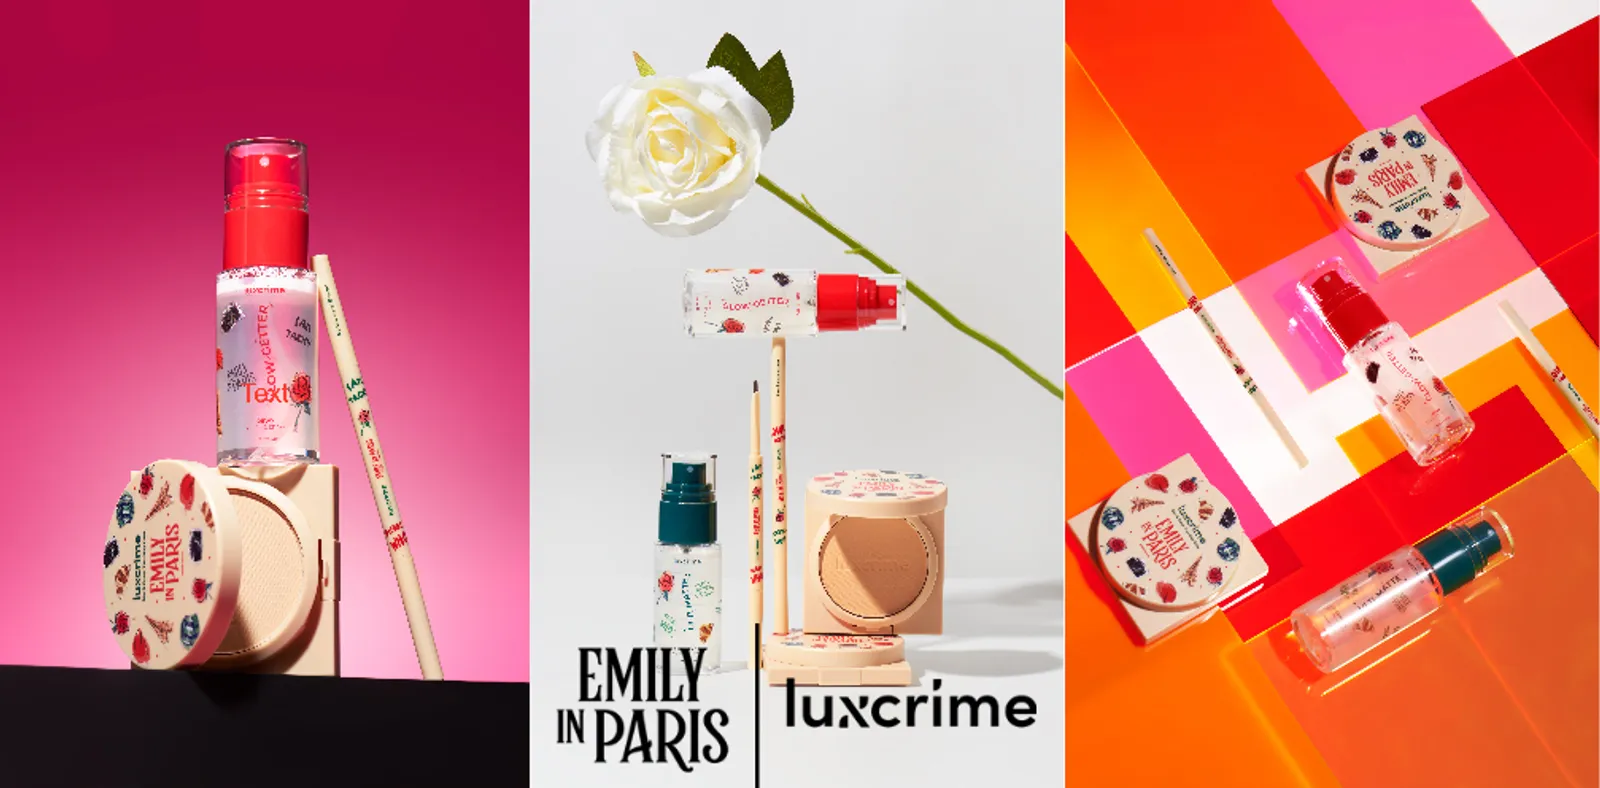 Luxcrime Gandeng Emily in Paris Hadirkan Tiga Produk Favorit, Gemas!